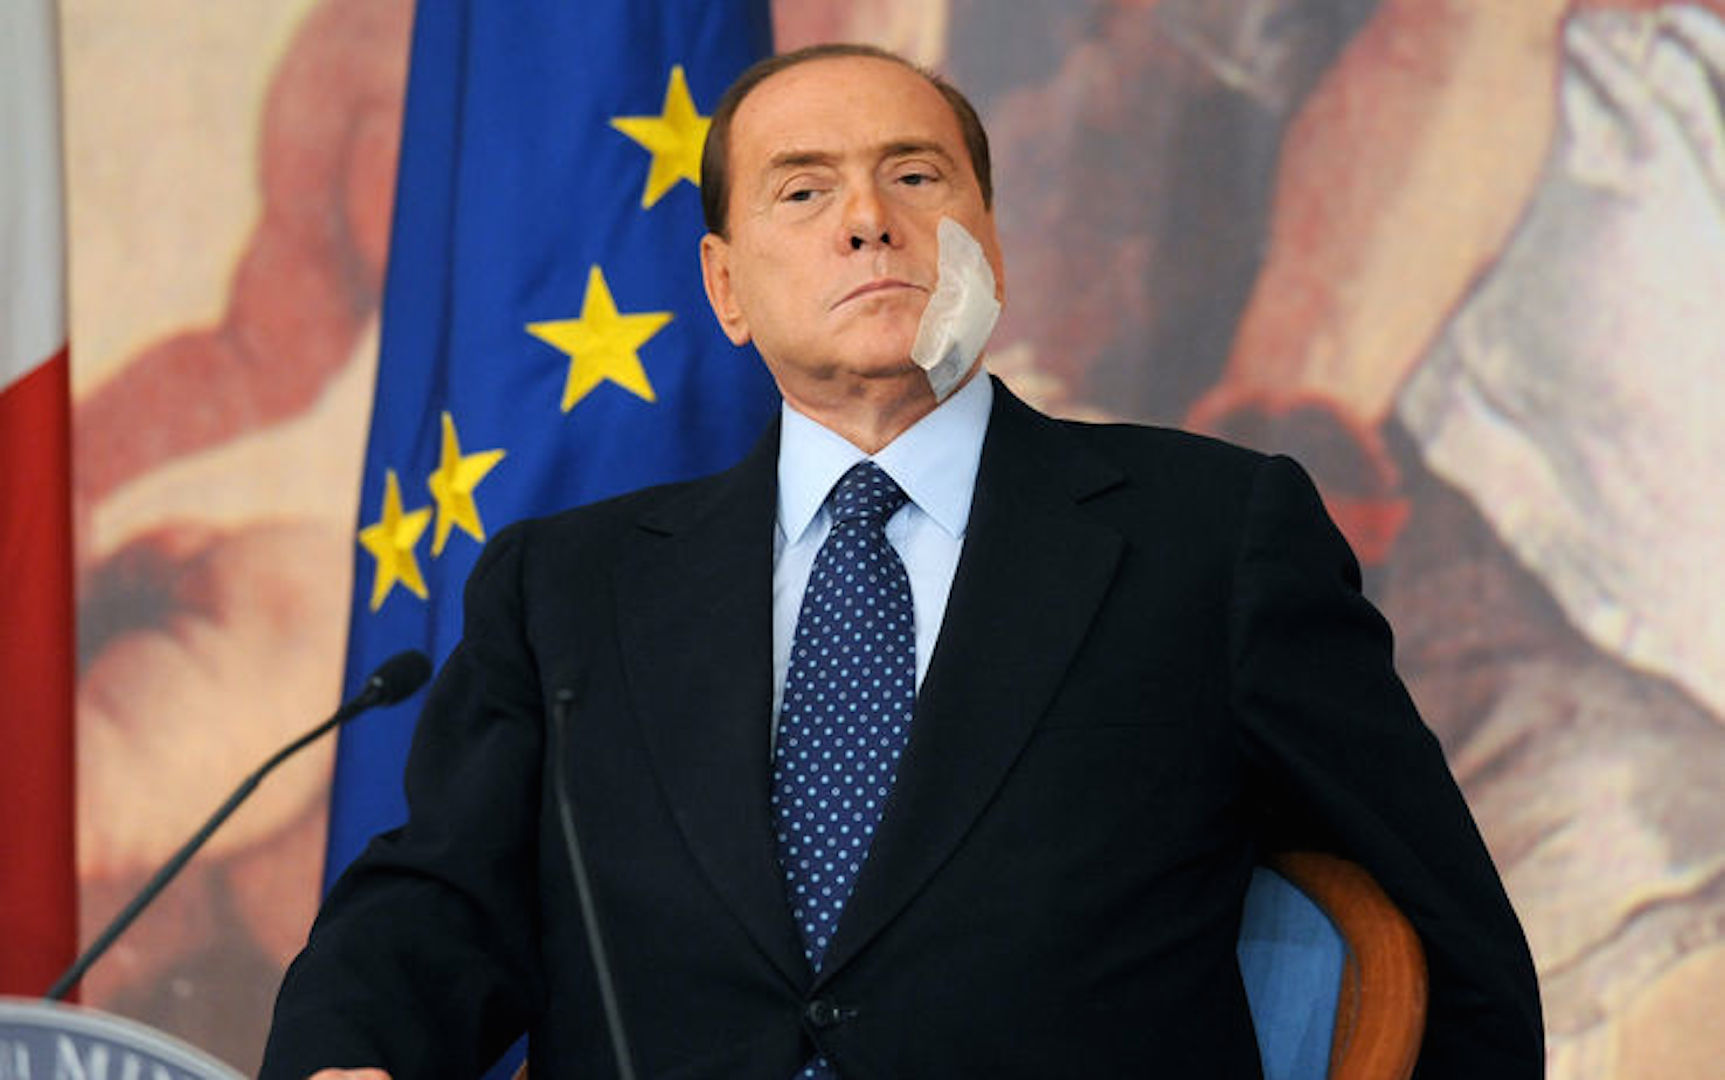 Silvio-Berlusconi-cerotto-in-faccia-statuetta-.jpg